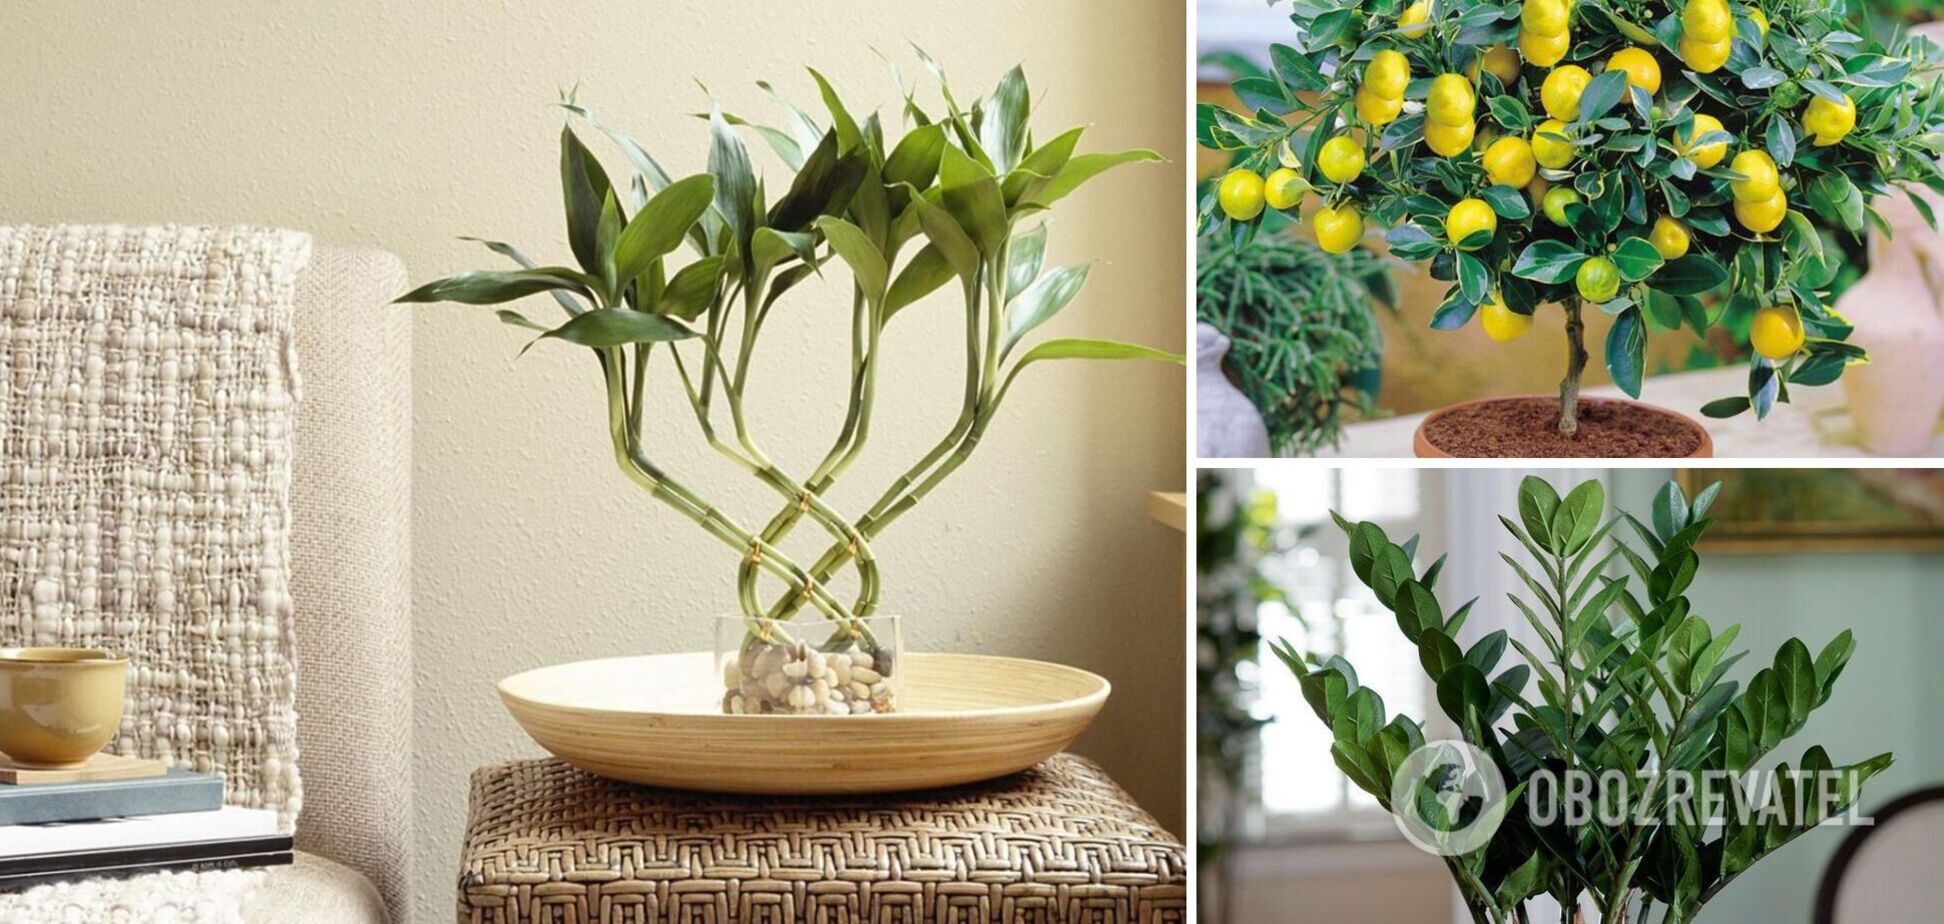 5 комнатных растений, которые притягивают в дом деньги и удачу